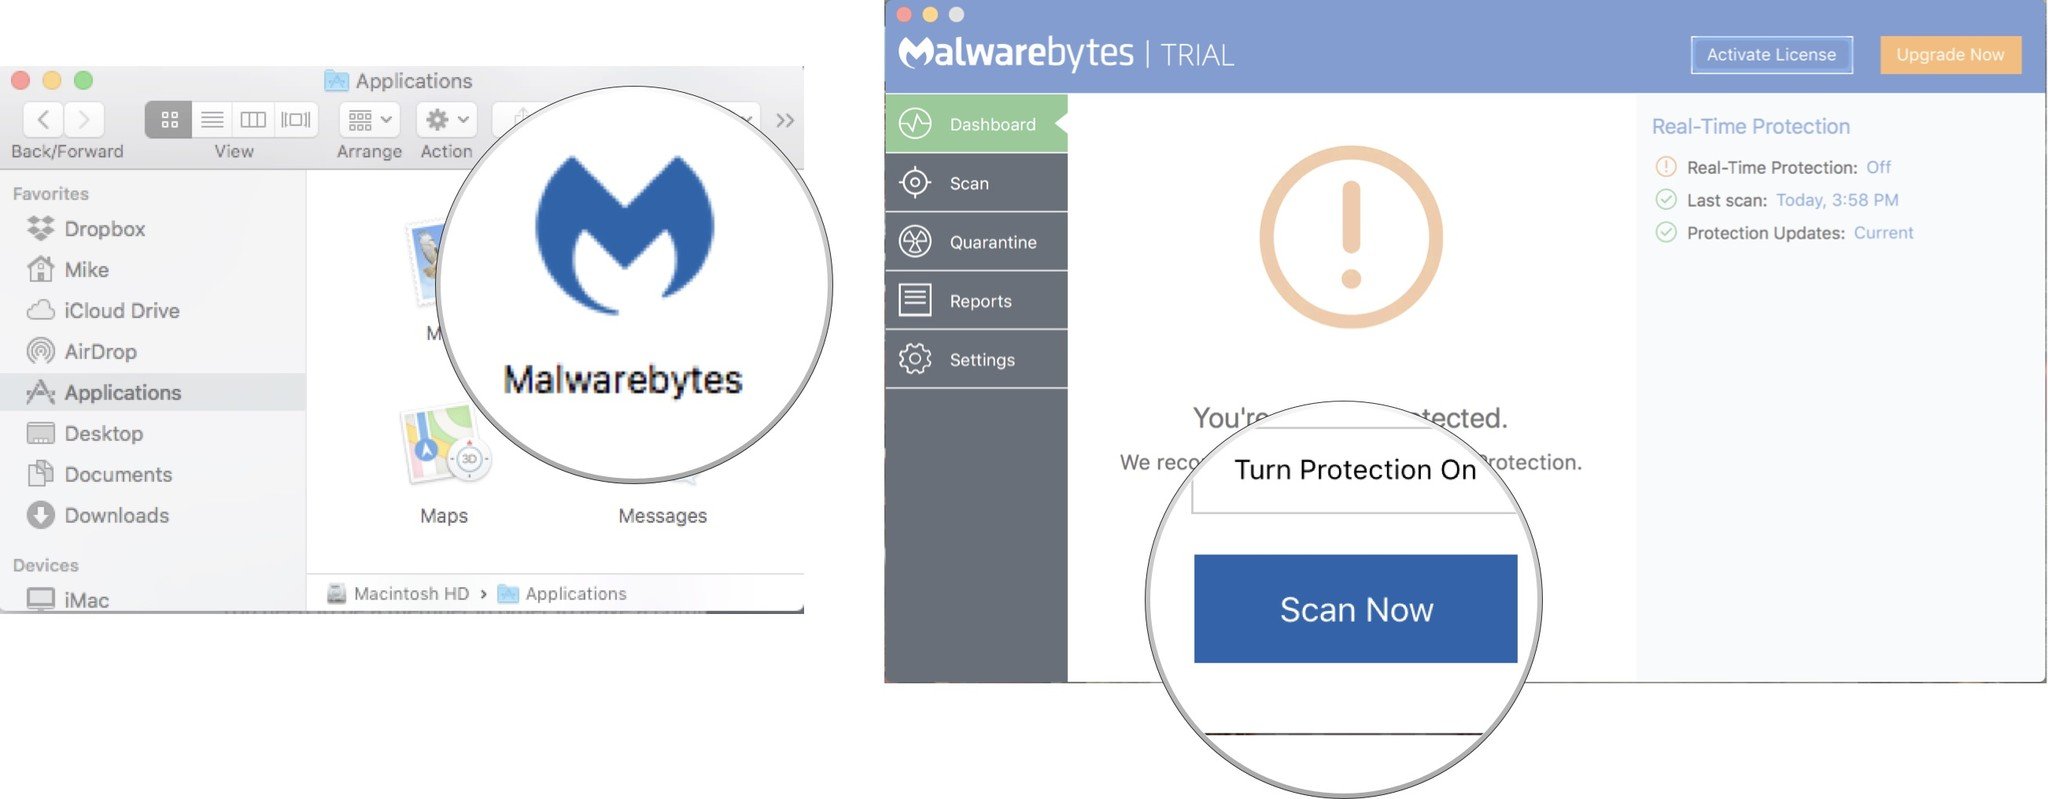 Open Malwarebytes, then click Scan Now